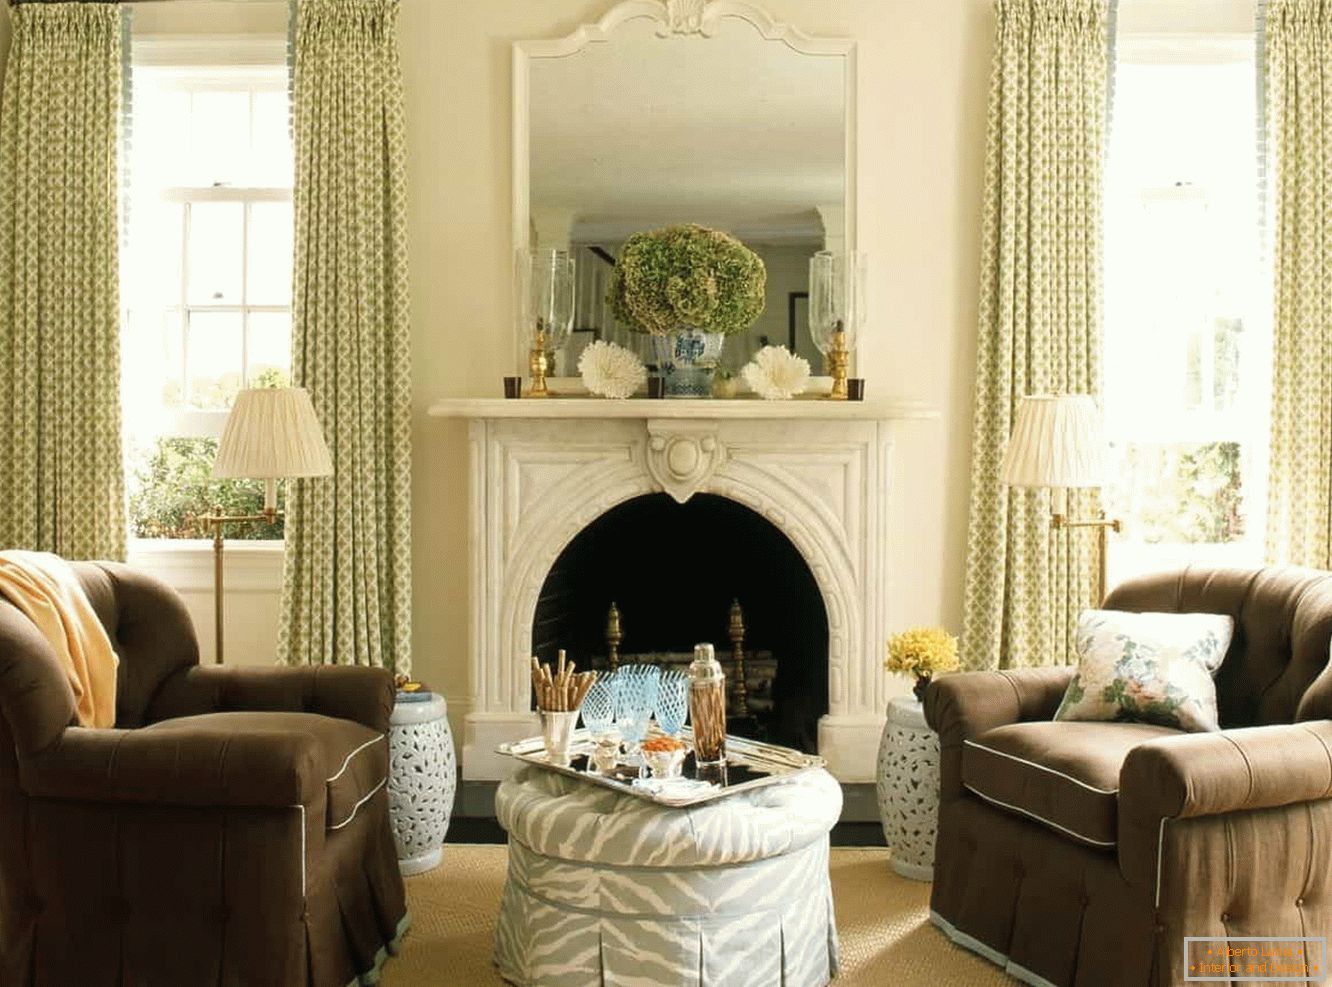 Sala de estar com lareira em estilo vintage